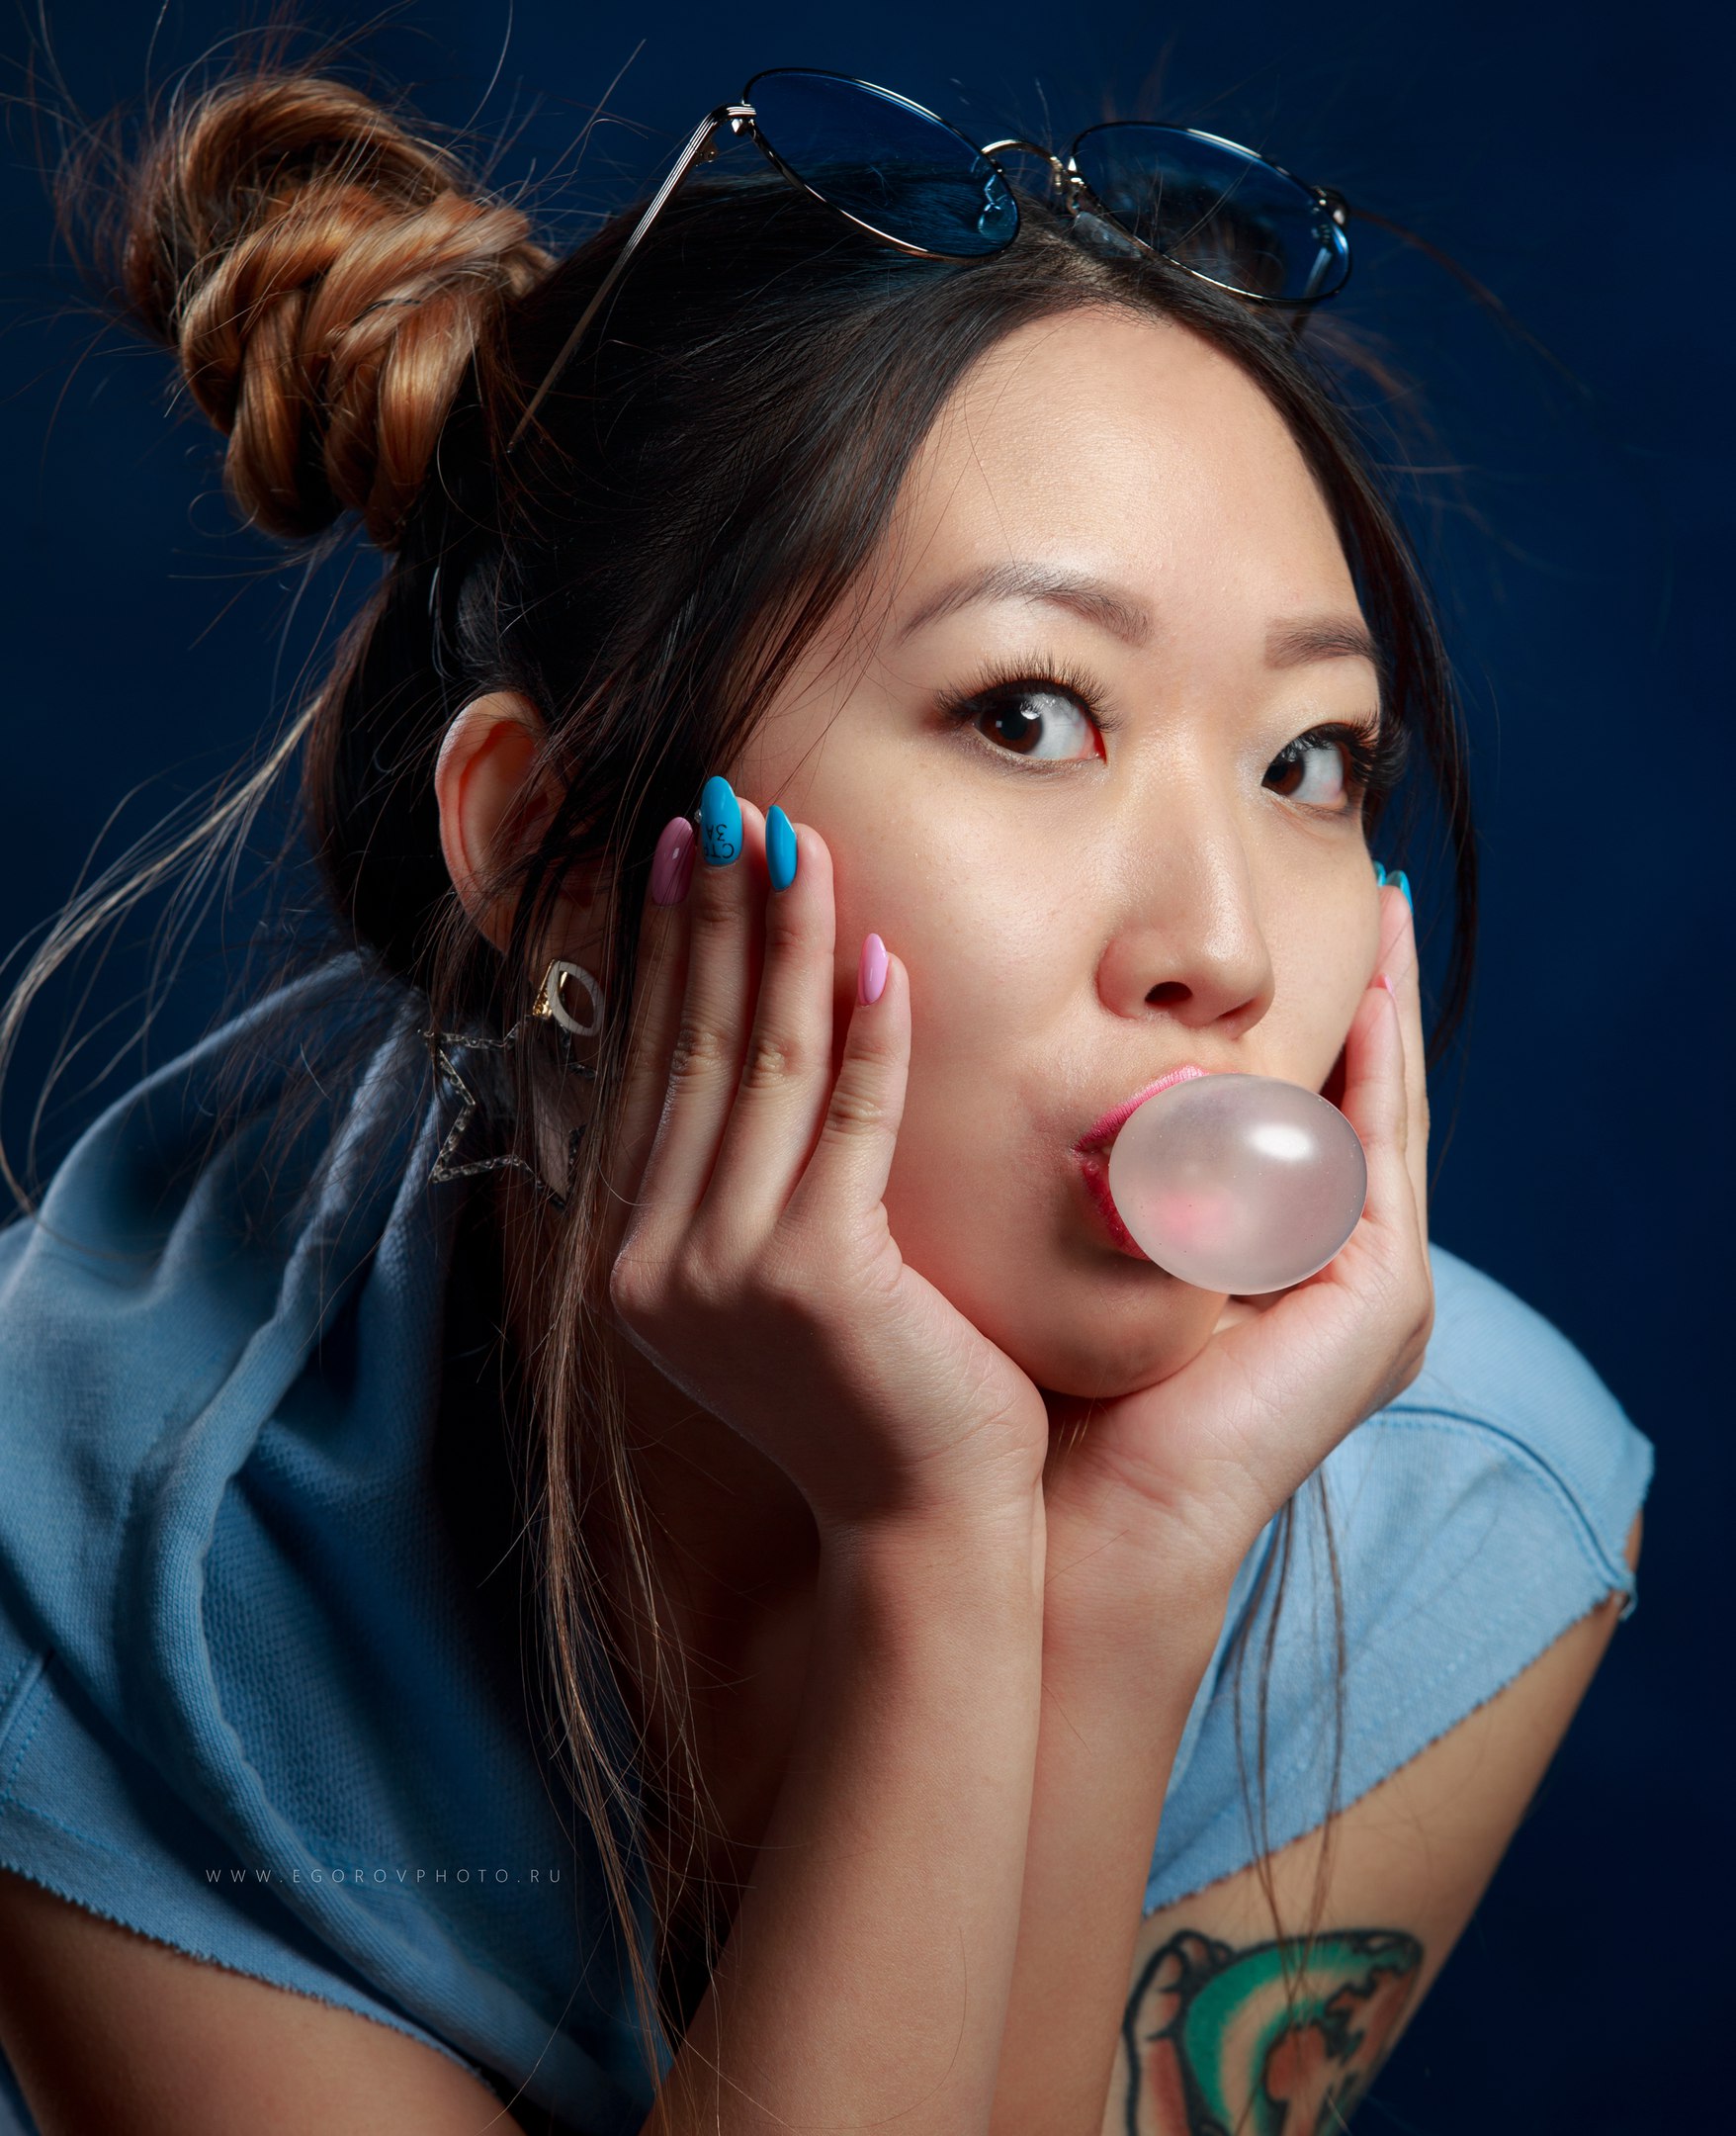 Asian Bubble Gum Painted Nails Women Face 1756x2160